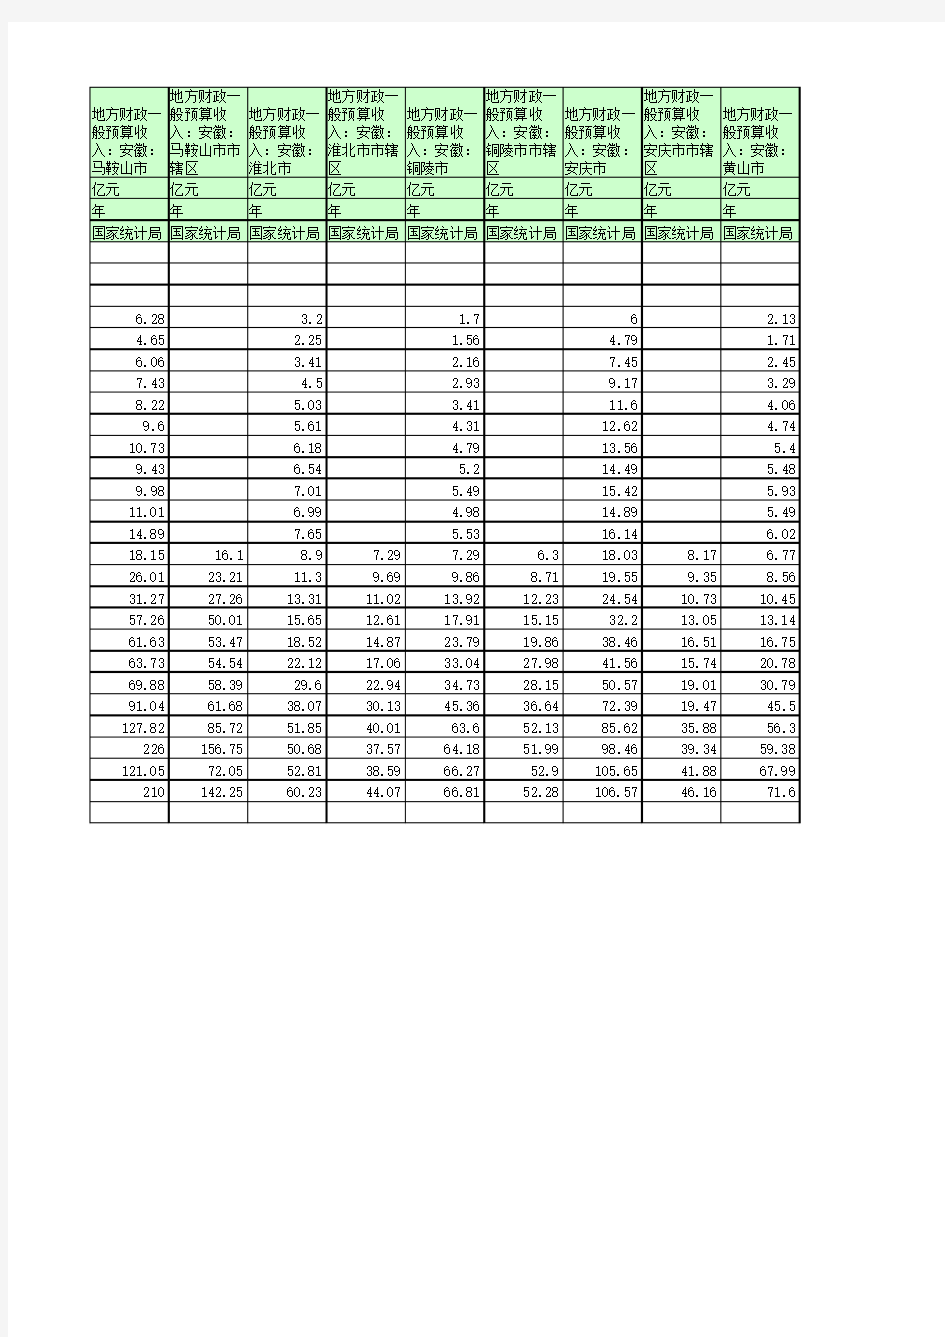 地方财政预算收入：安徽(1990年至2016年)